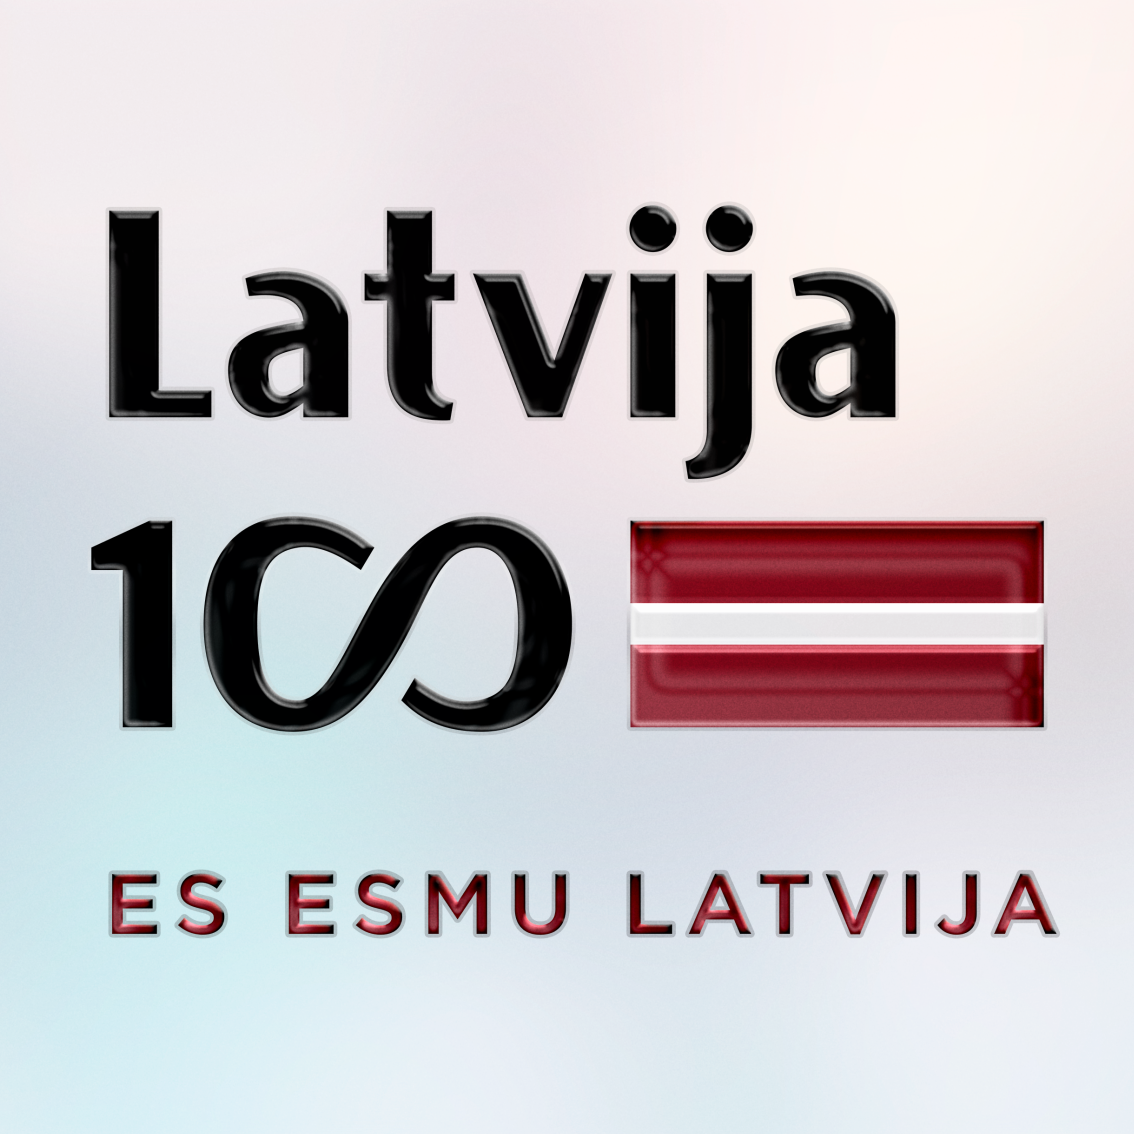 attēla pamatfons ir vieglos pasteļtoņos uz kura attēlota UV DTF uzlīme ar lakas pārklājumu. Uzlīmei ir redzams lakas reljefs. Uzlīme ir teksta  formā ar Latvijas karoga krāsām. Uzraksts melnā un sarkanā krāsā Latvija 100 un sarkans ES ESMU LATVIJA. Apakšējā rindā 100 gades simbolika ar nelielu arodziņu.